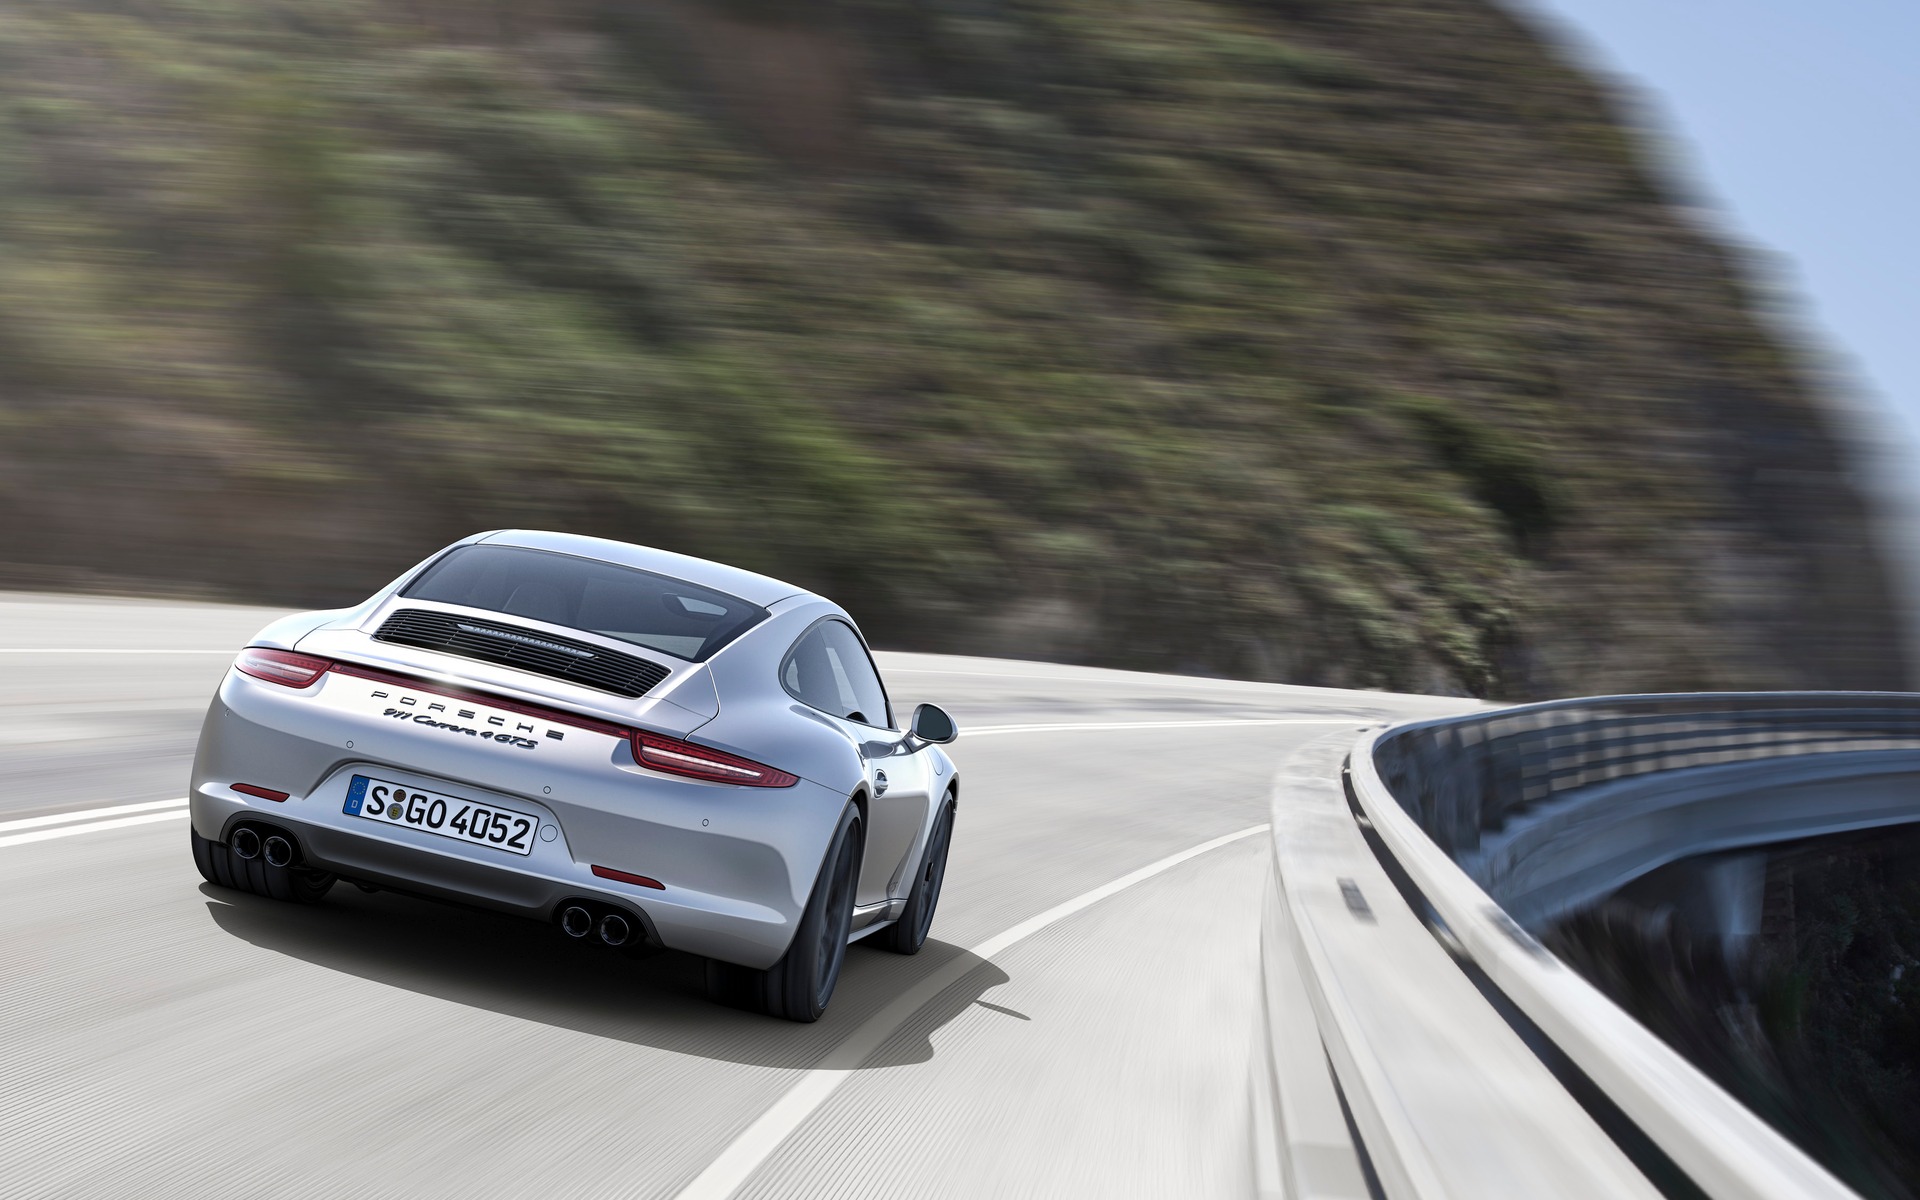 La GTS peut passer de 0 à 100 km/h en 4,0 secondes selon Porsche. 